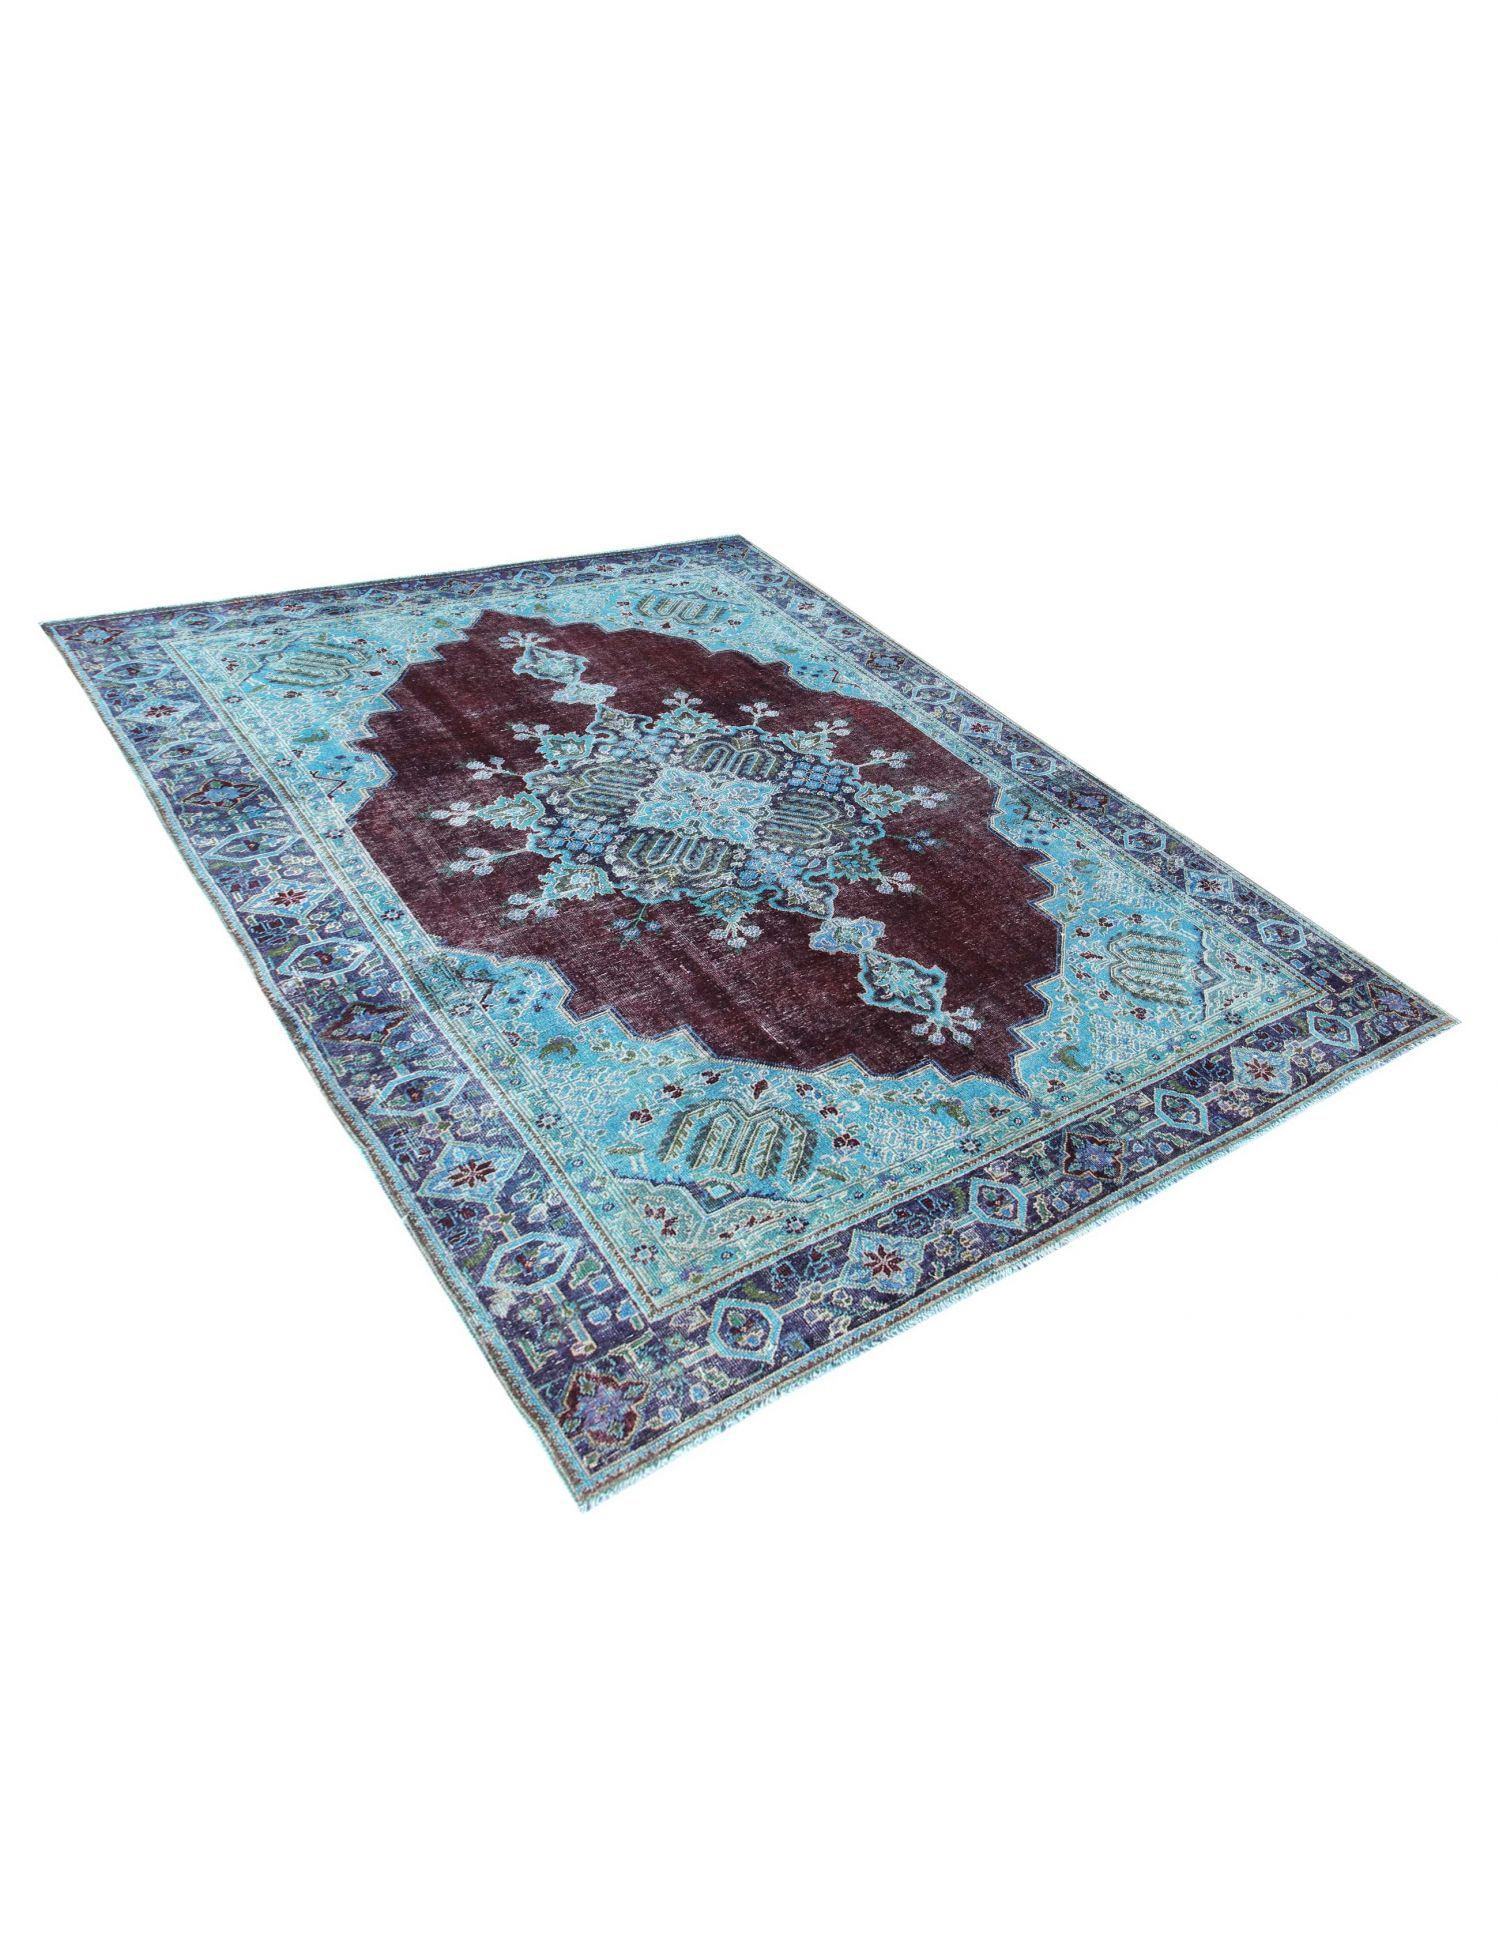 Persian Vintage Carpet  blue <br/>290 x 200 cm